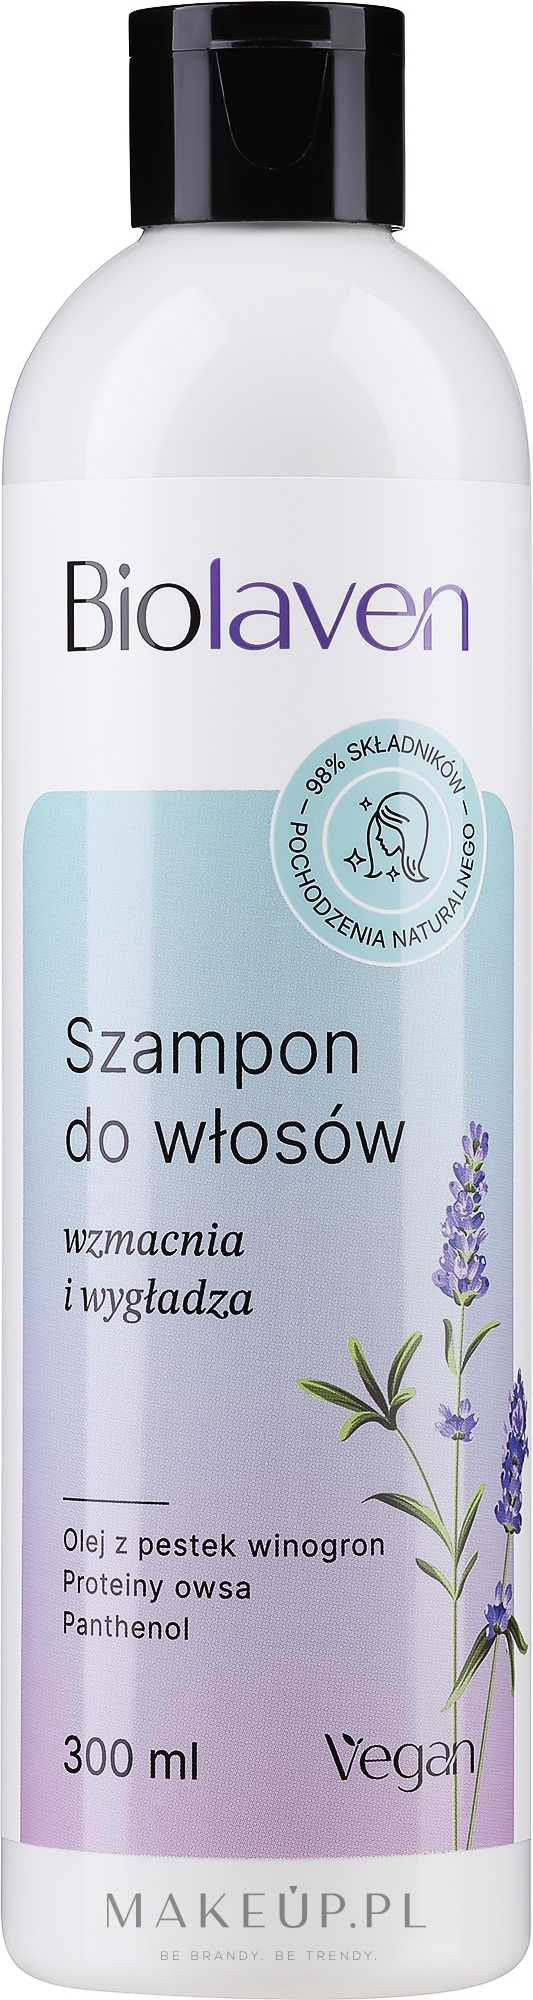 szampon biolaven wizaz